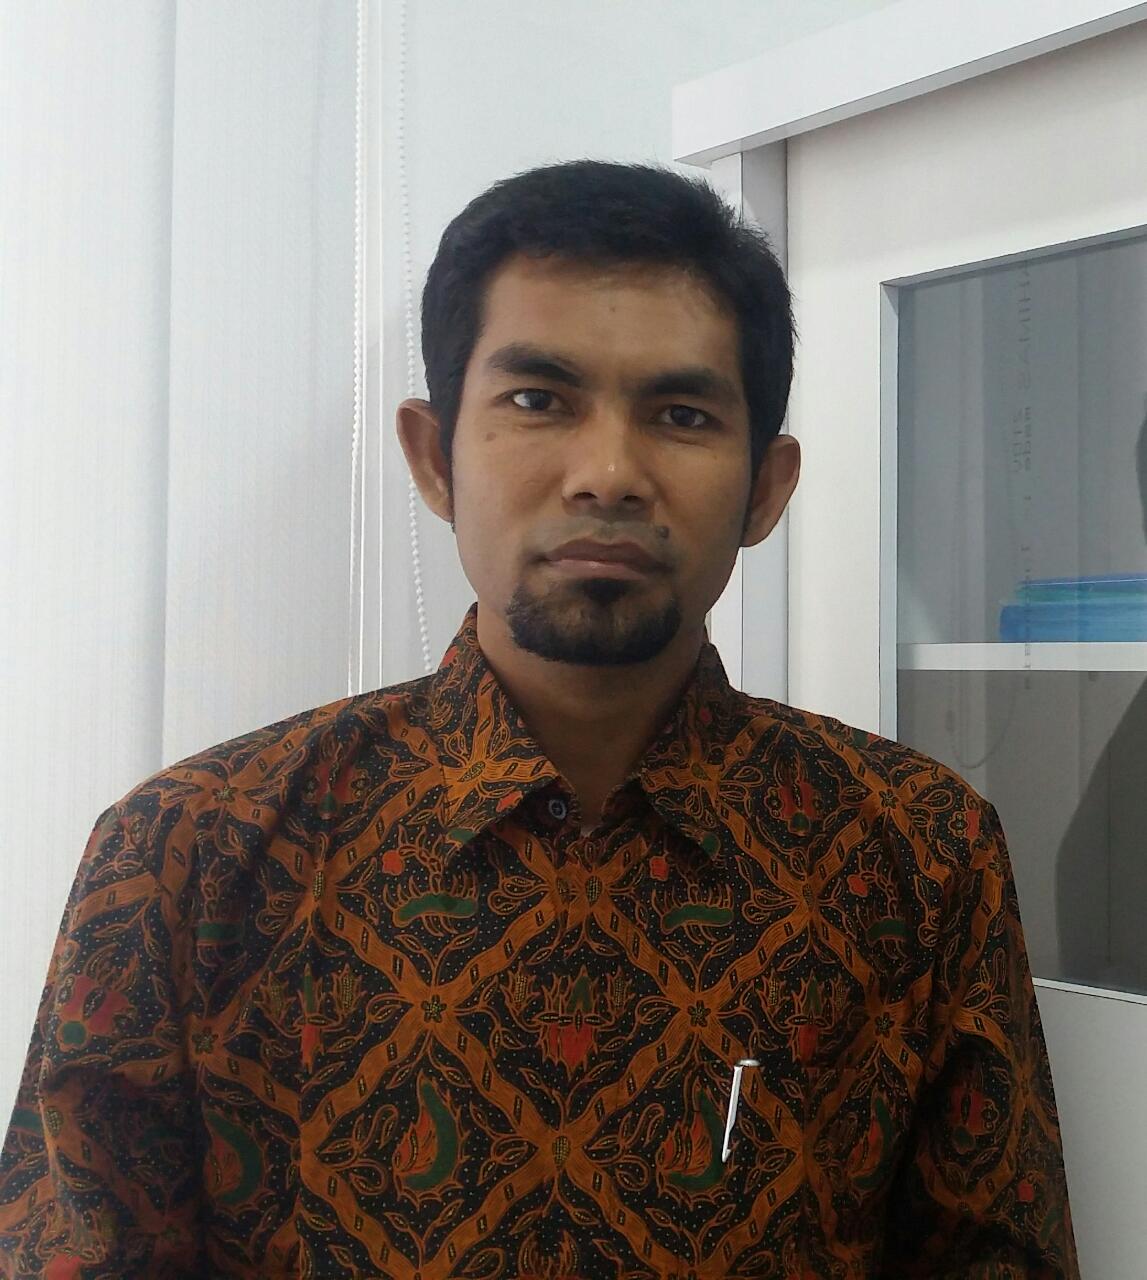 Lemkaspa Minta Pemerintah Aceh dan DPRA Kaji Ulang Terkait Pemberhentian Tenaga Kontrak